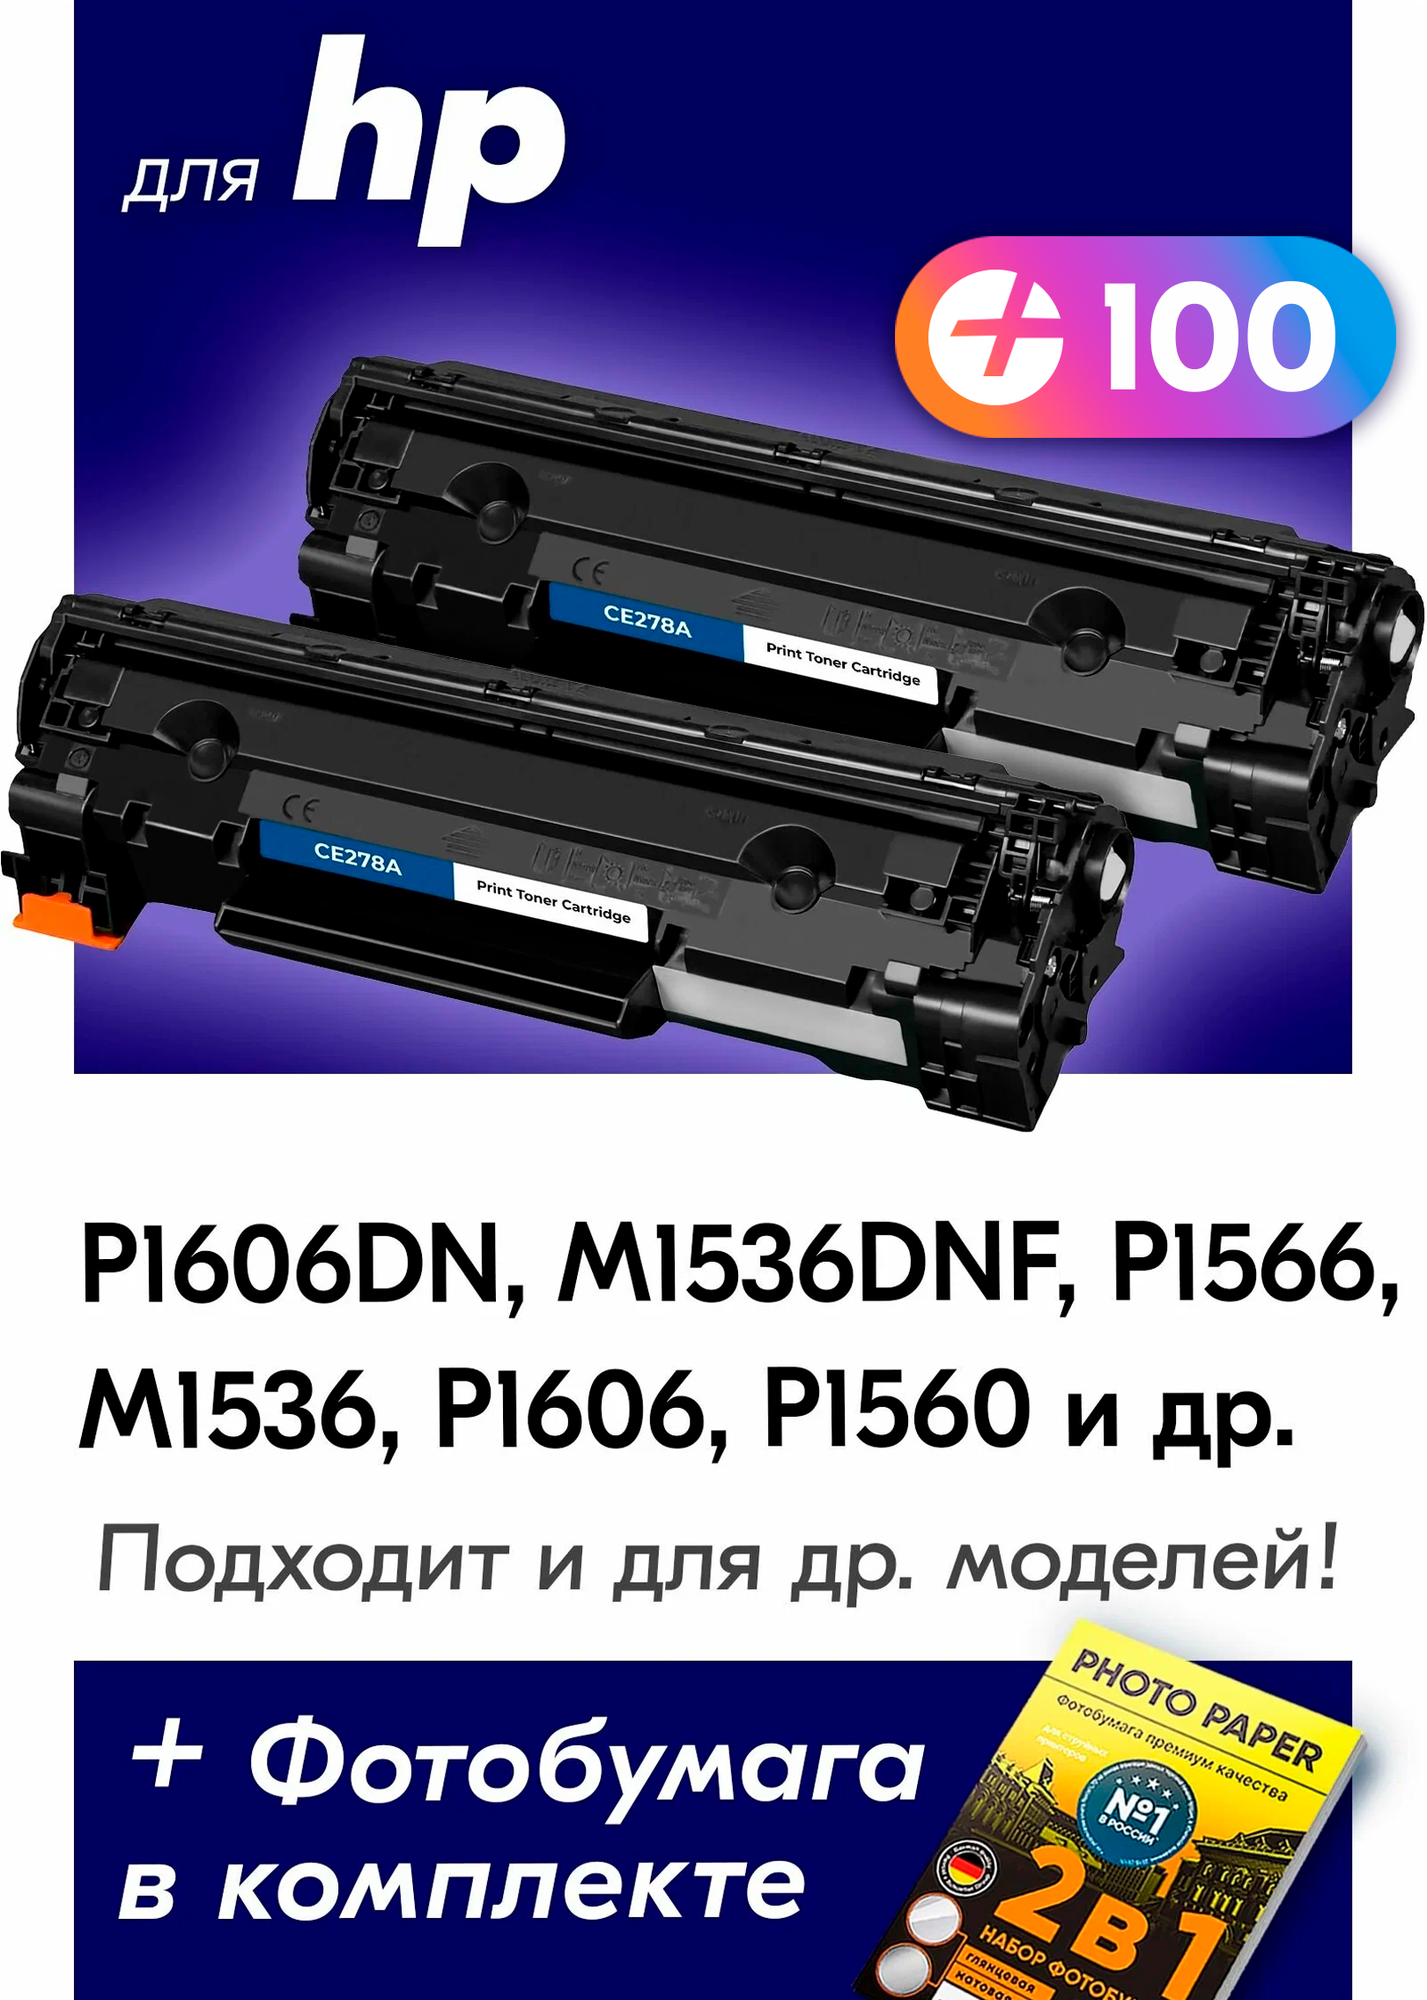 Лазерные картриджи для HP CE278A (№ 78A), HP LaserJet P1606DN, M1536DNF, P1566, M1536 и др. с краской (тонером) черные новые заправляемые, 4200 копий